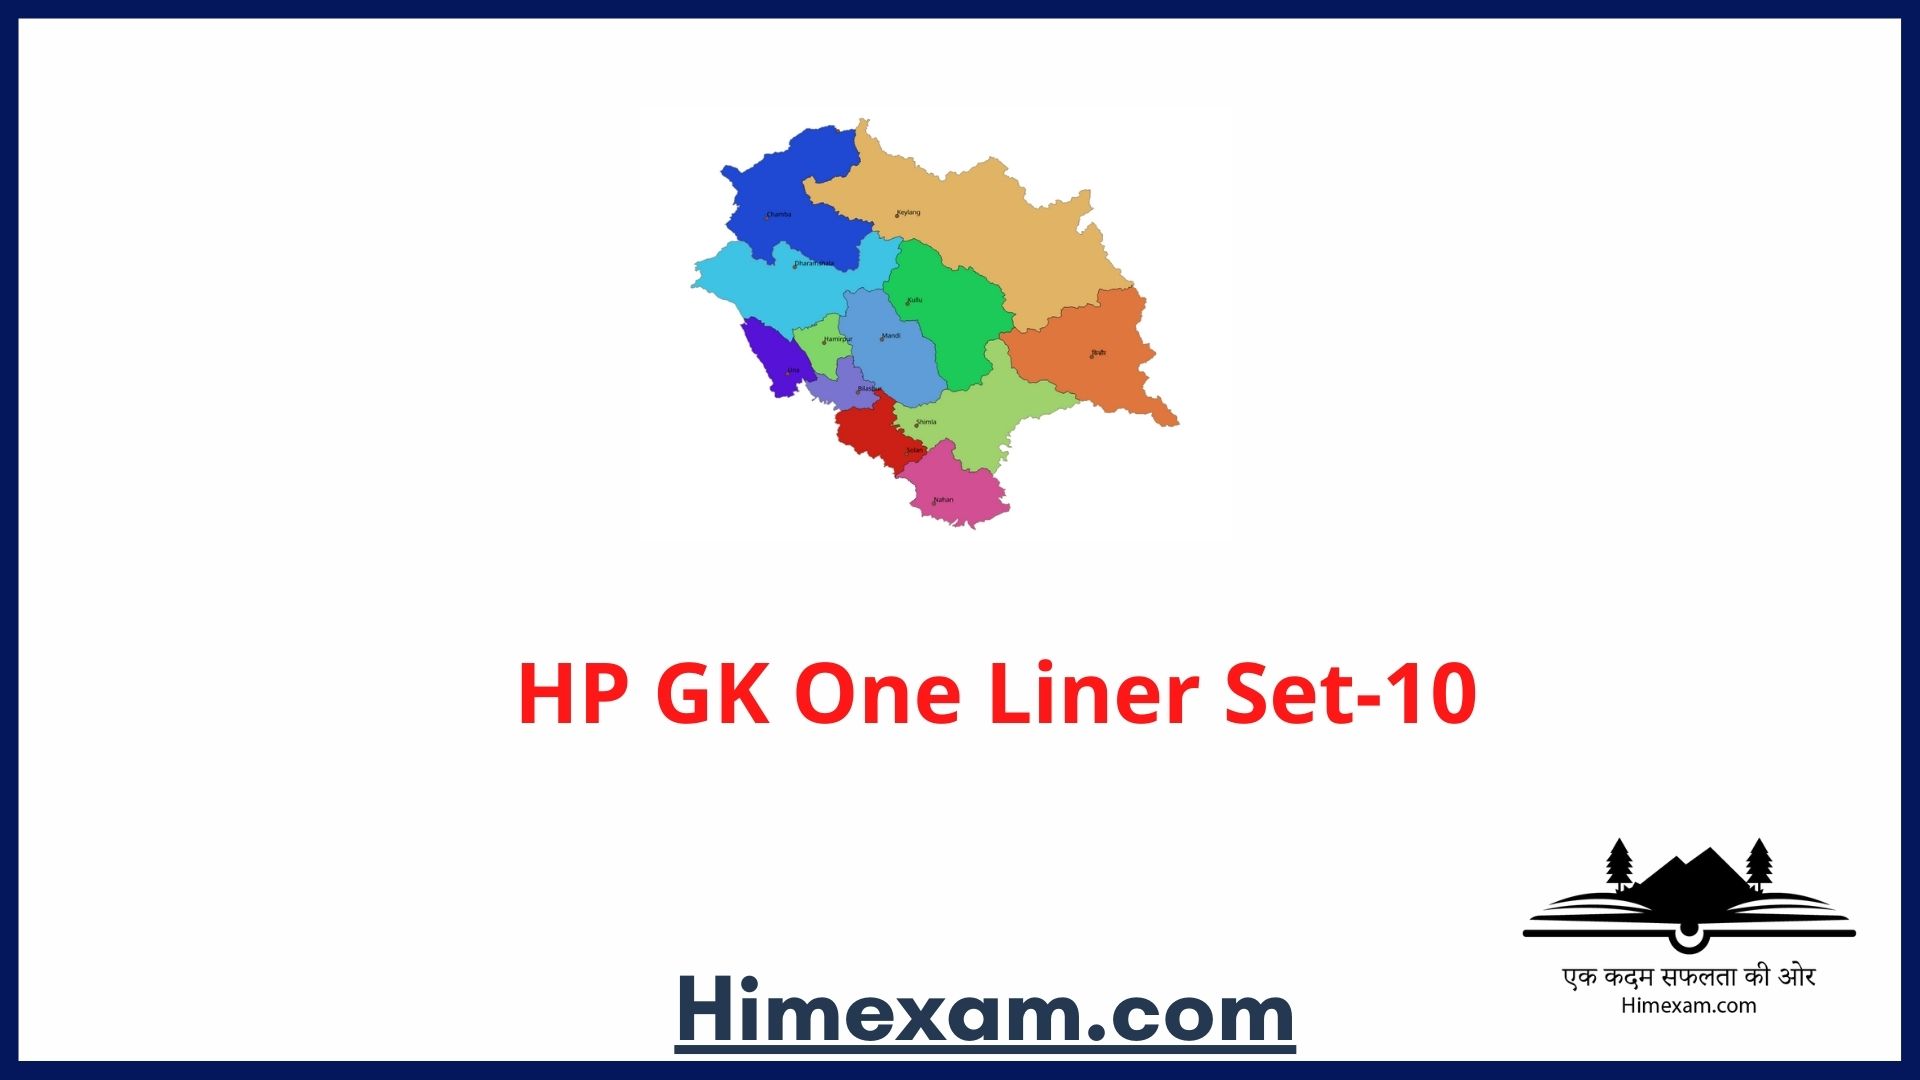 HP GK One Liner Set-10